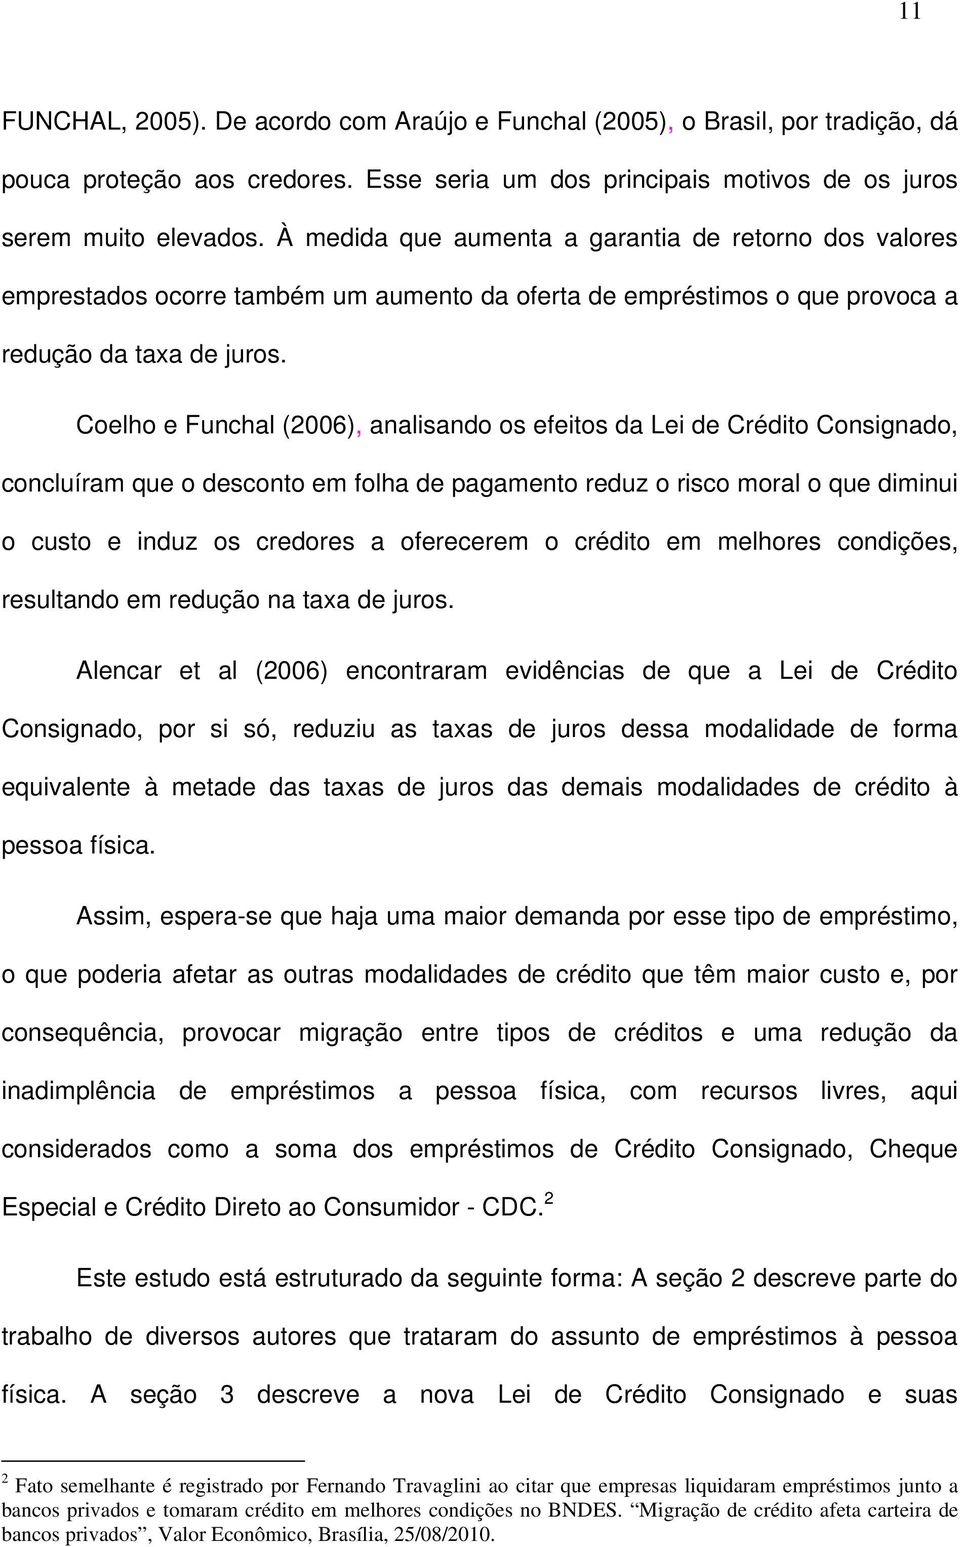 Coelho e Funchal (2006), analisando os efeitos da Lei de Crédito Consignado, concluíram que o desconto em folha de pagamento reduz o risco moral o que diminui o custo e induz os credores a oferecerem